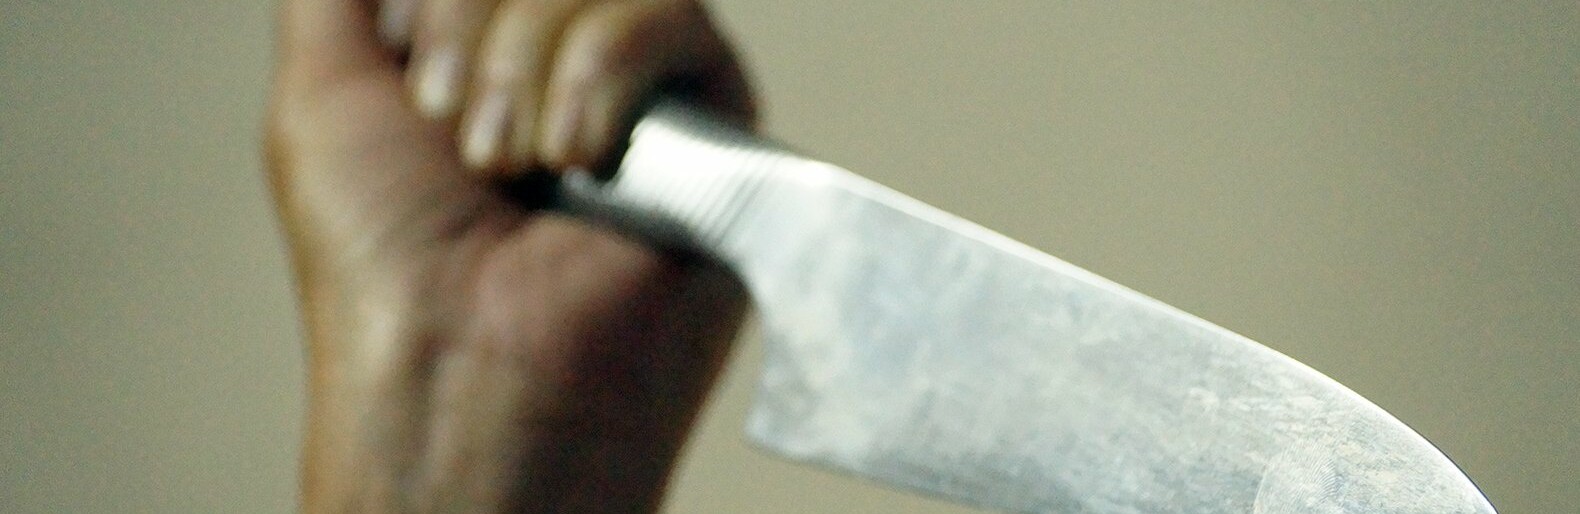 Белгородцу дали четыре года тюрьмы за нападение на продавца с ножом